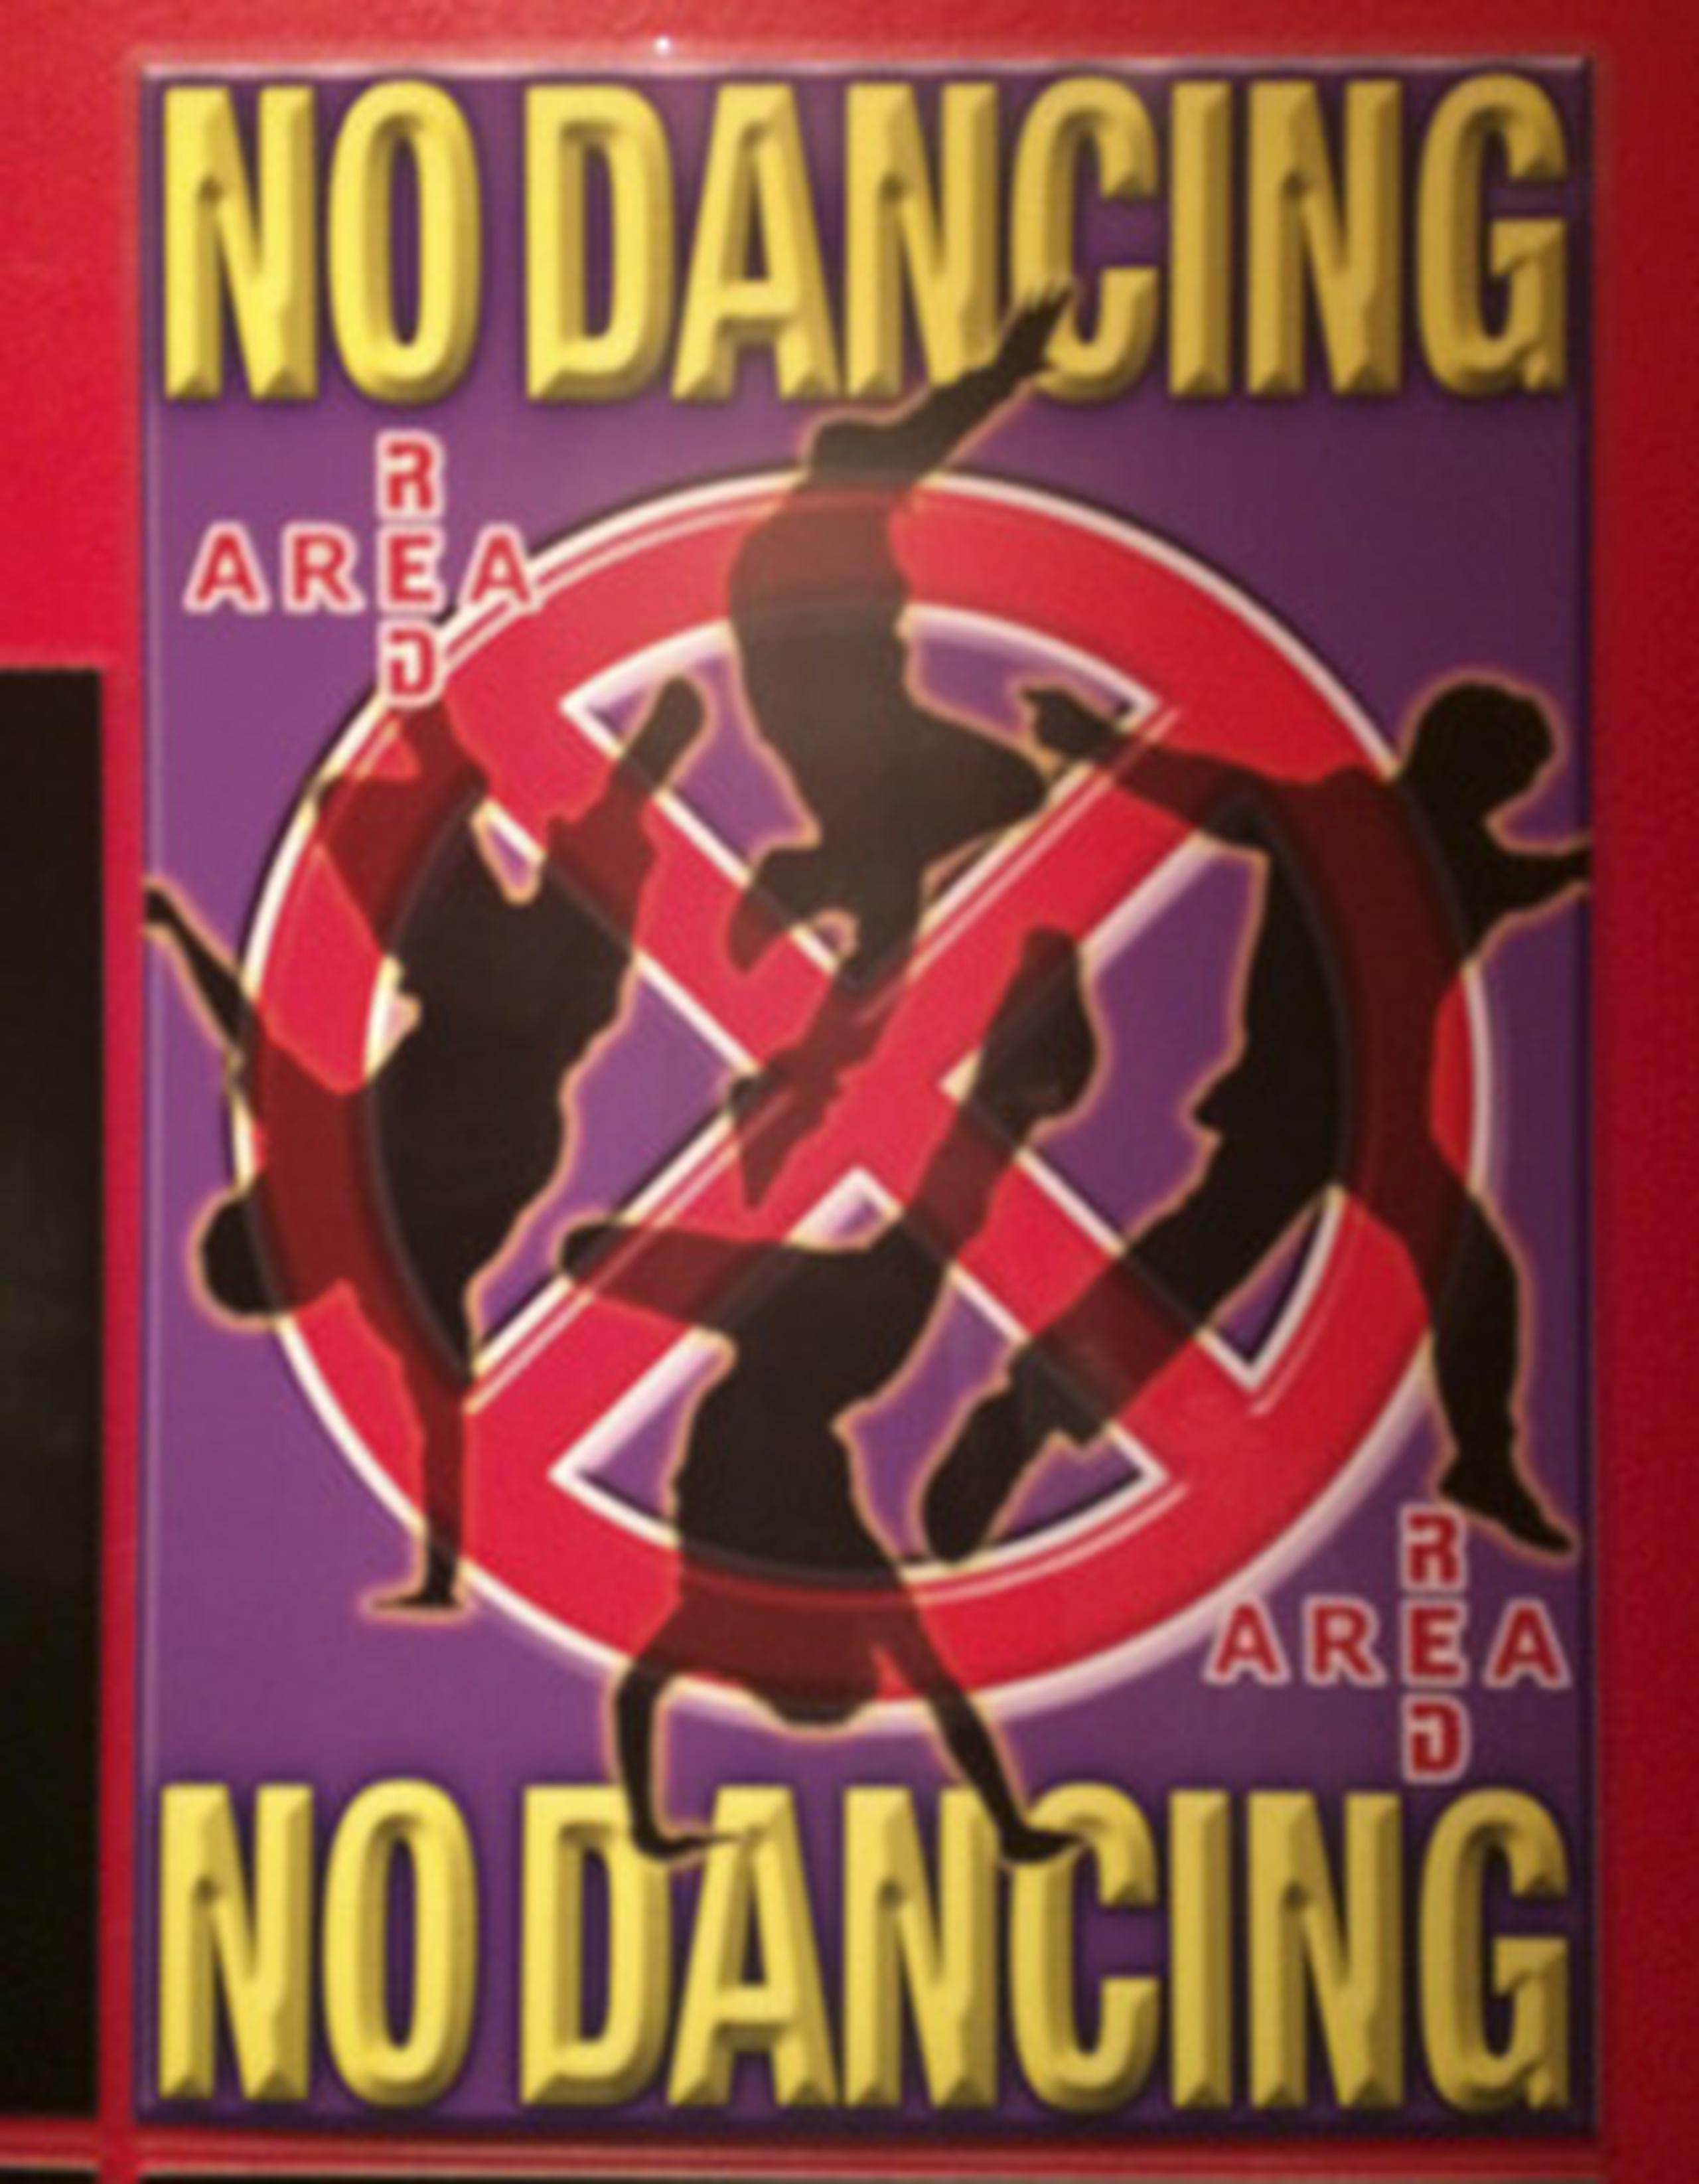 El cartel de "No dancing" (No bailar) preside las pistas de baile de muchos establecimientos nipones. (EFE)